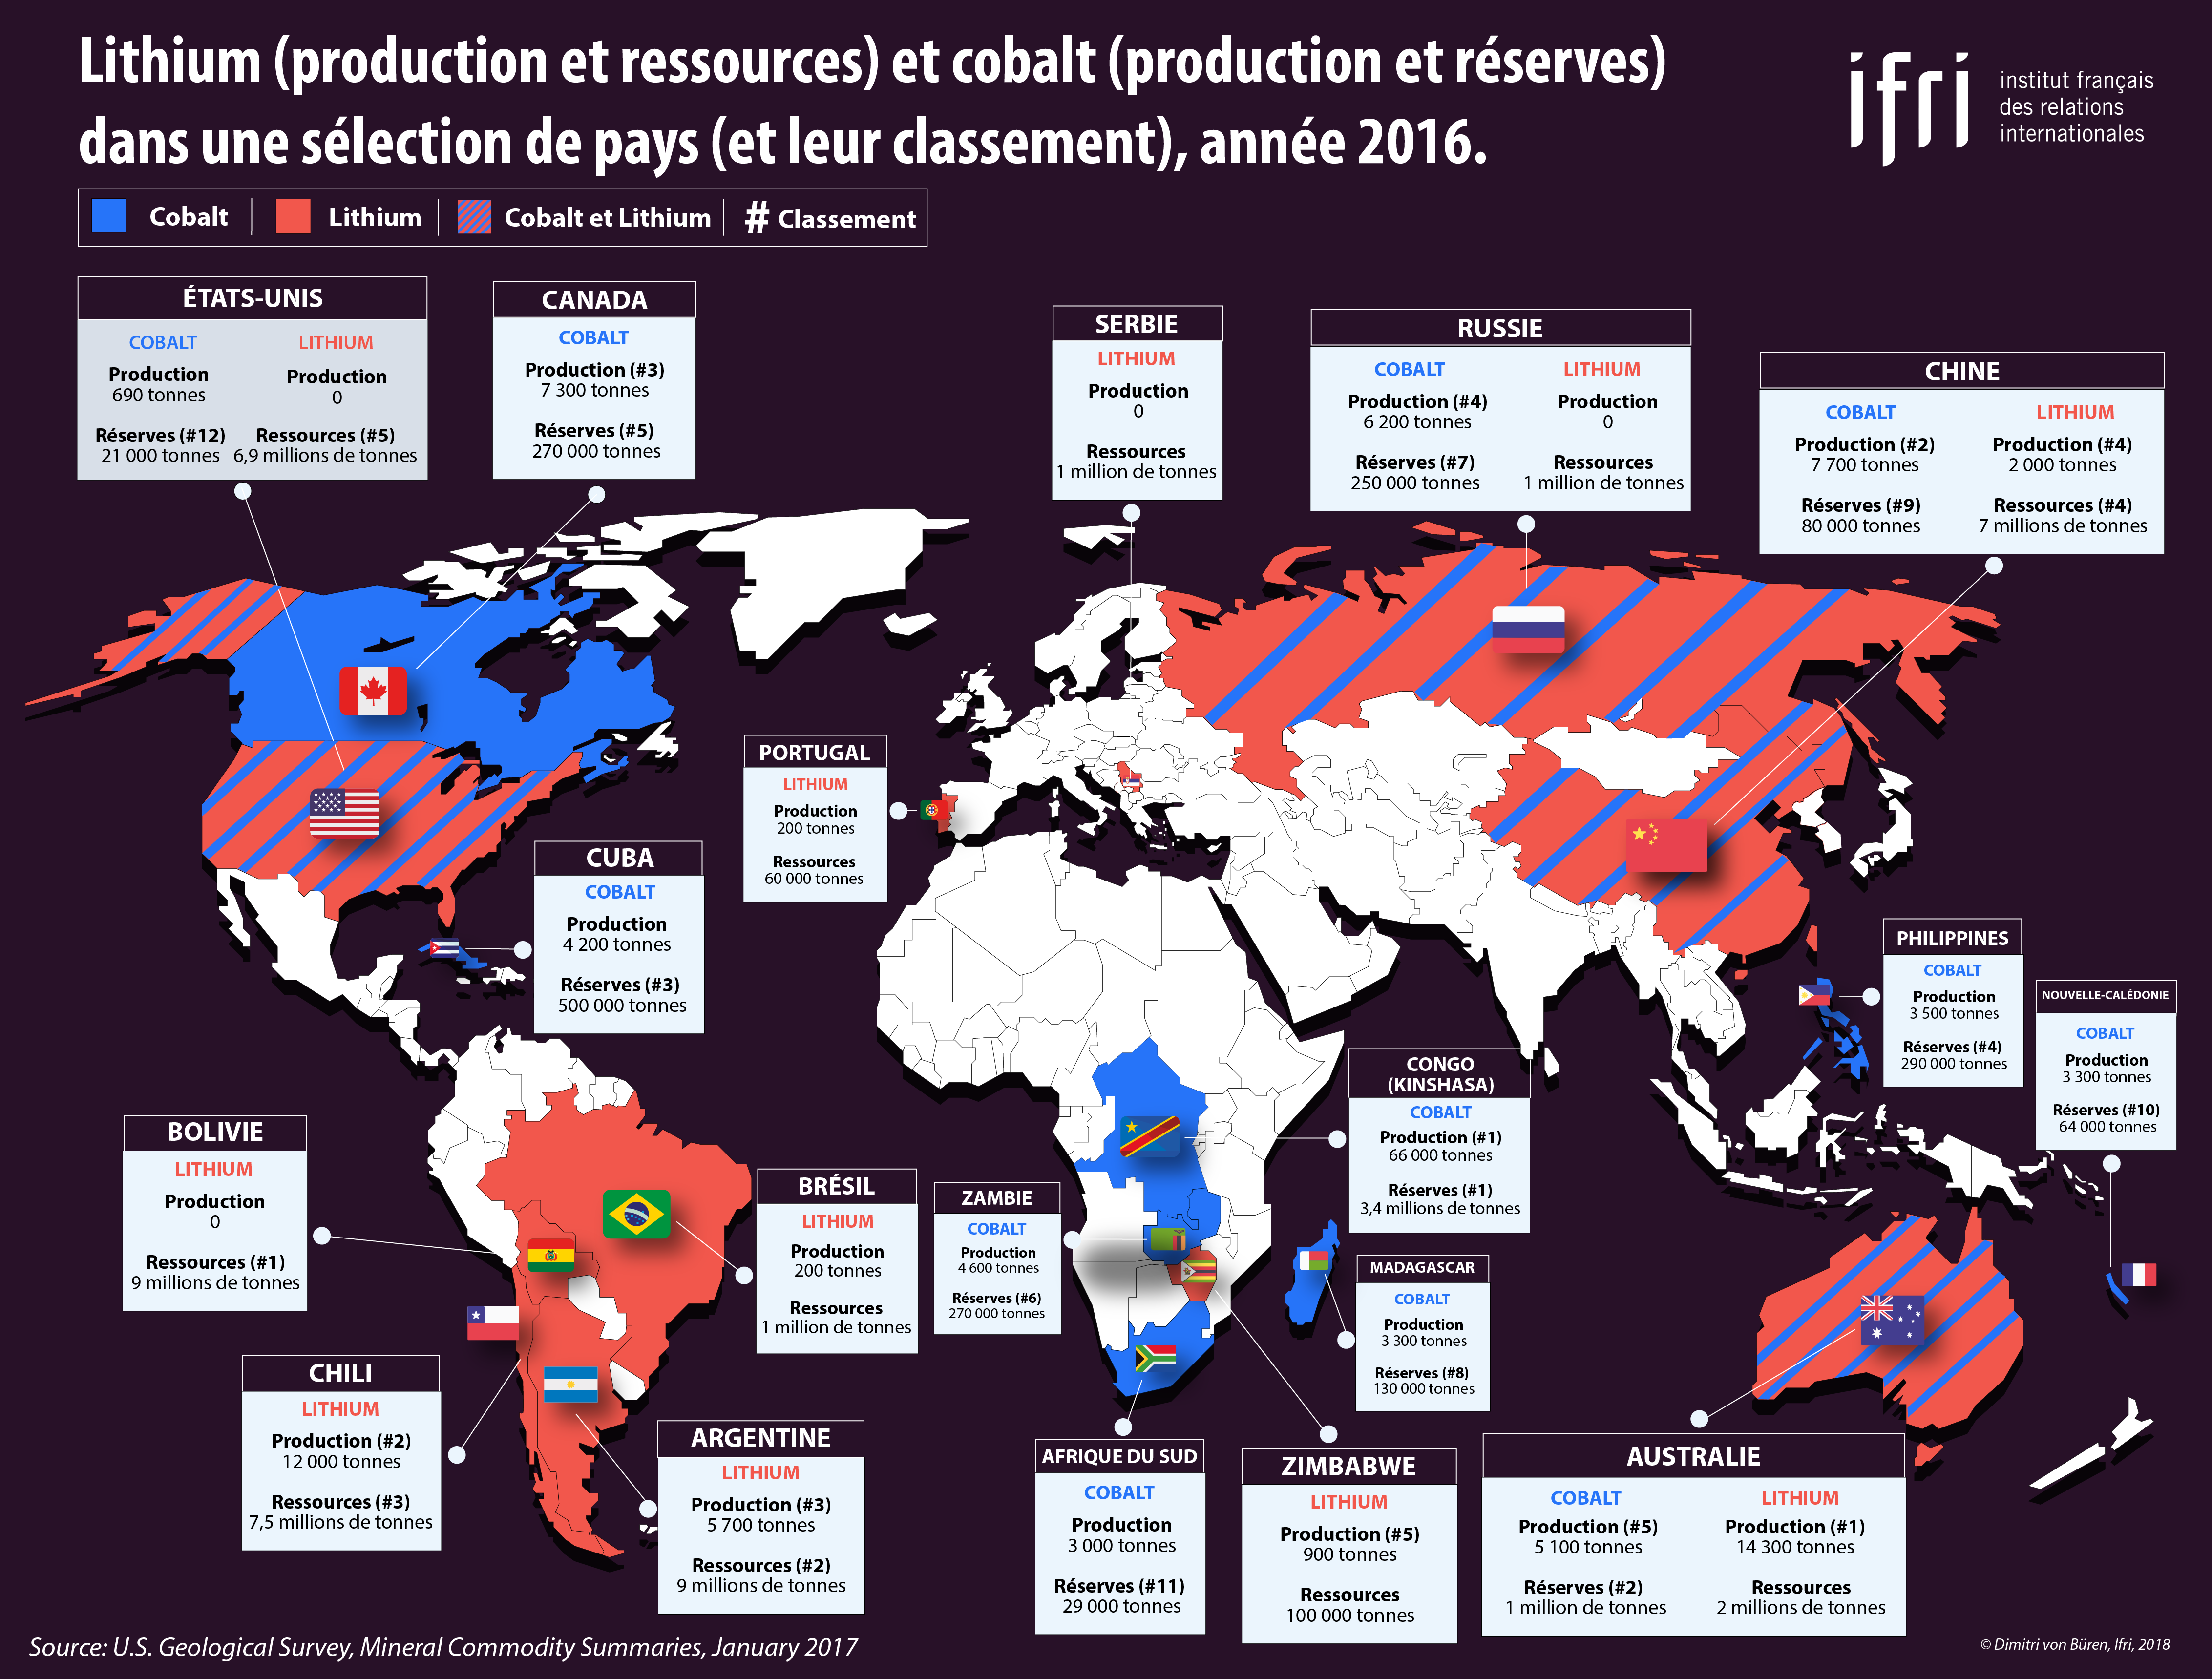 Lithium (production et ressources) et cobalt (production et réserves) dans une sélection de pays (et leur classement), année 2016.